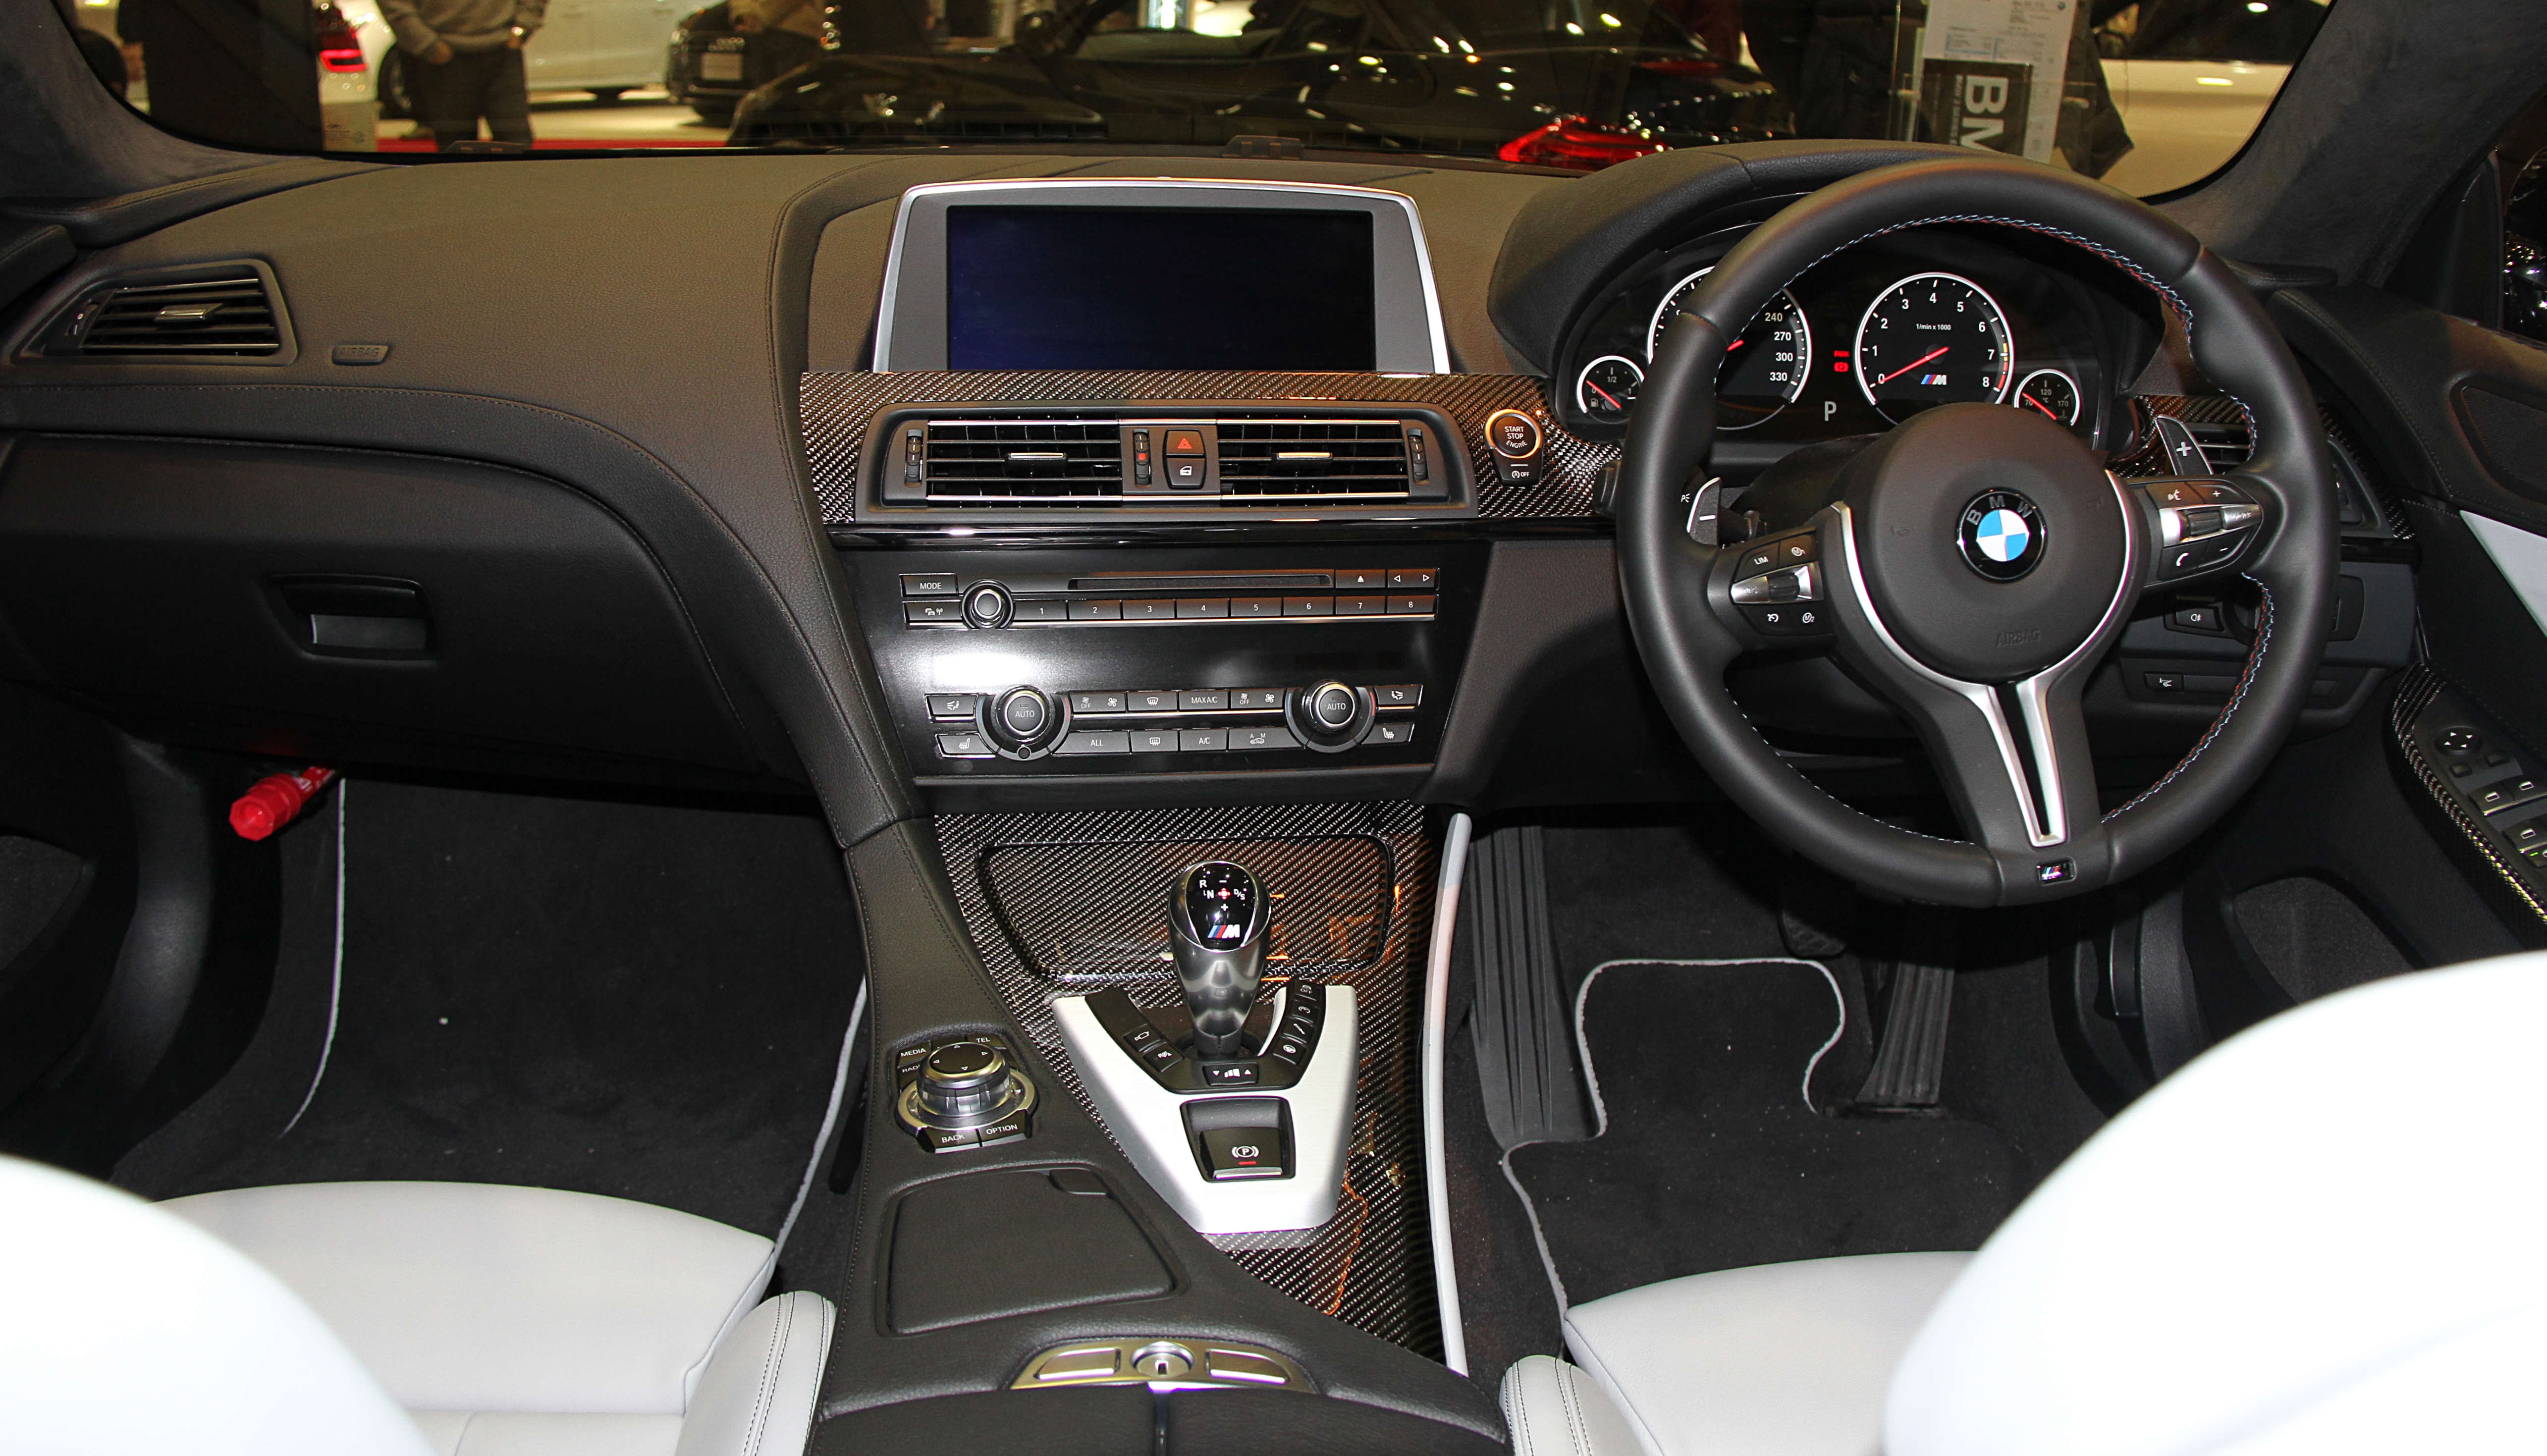 File:BMW M6 Gran Coupe interior.jpg - Wikipedia